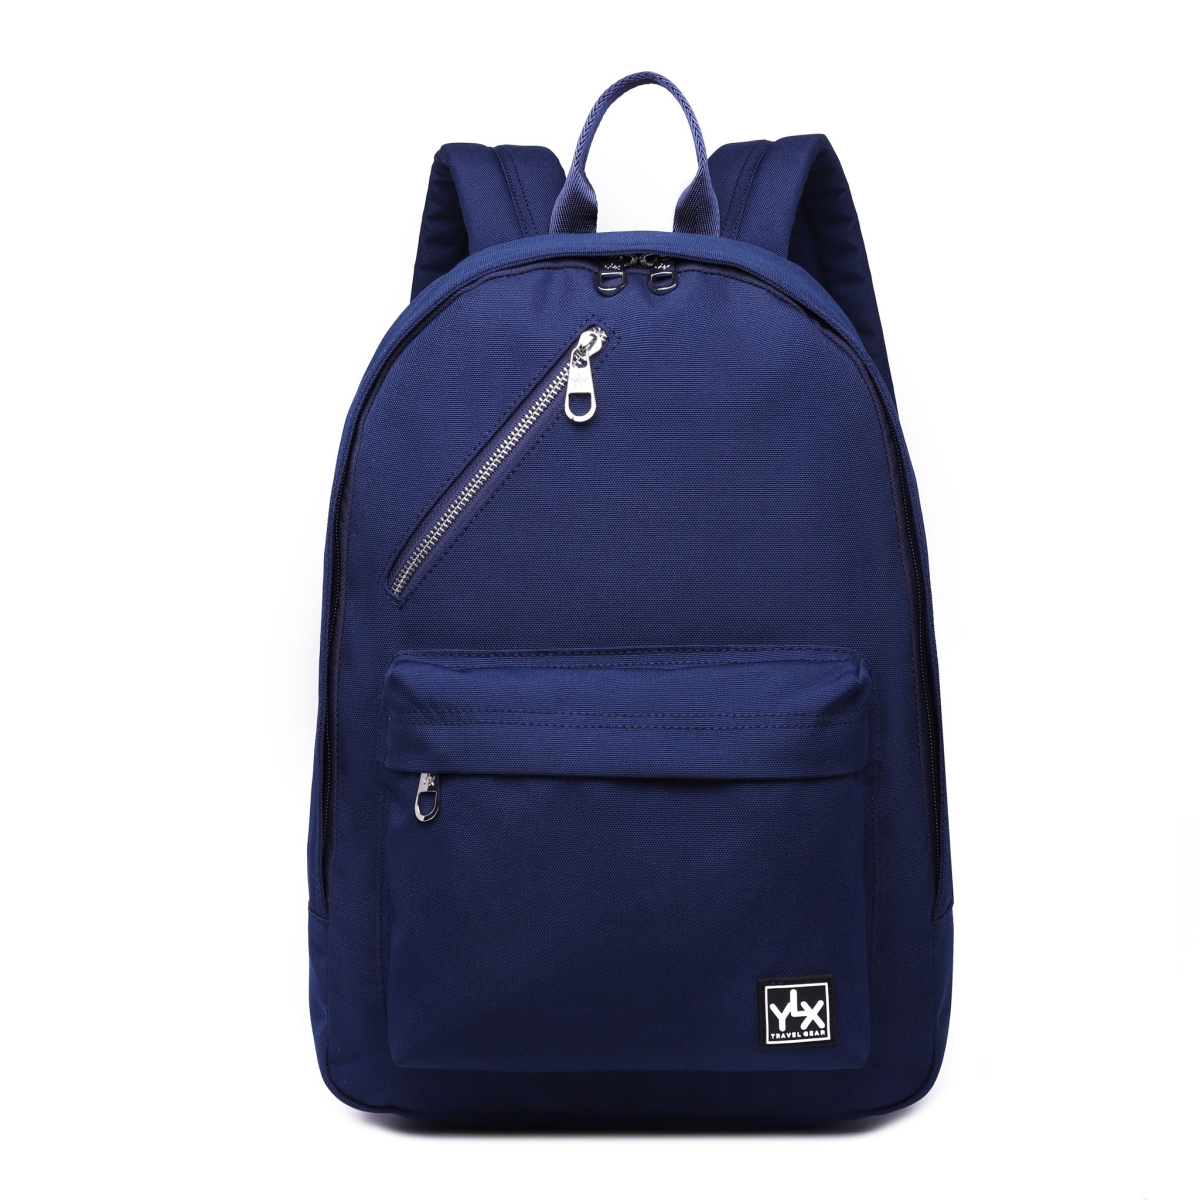 YLX Cornel Backpack | Navy Blue